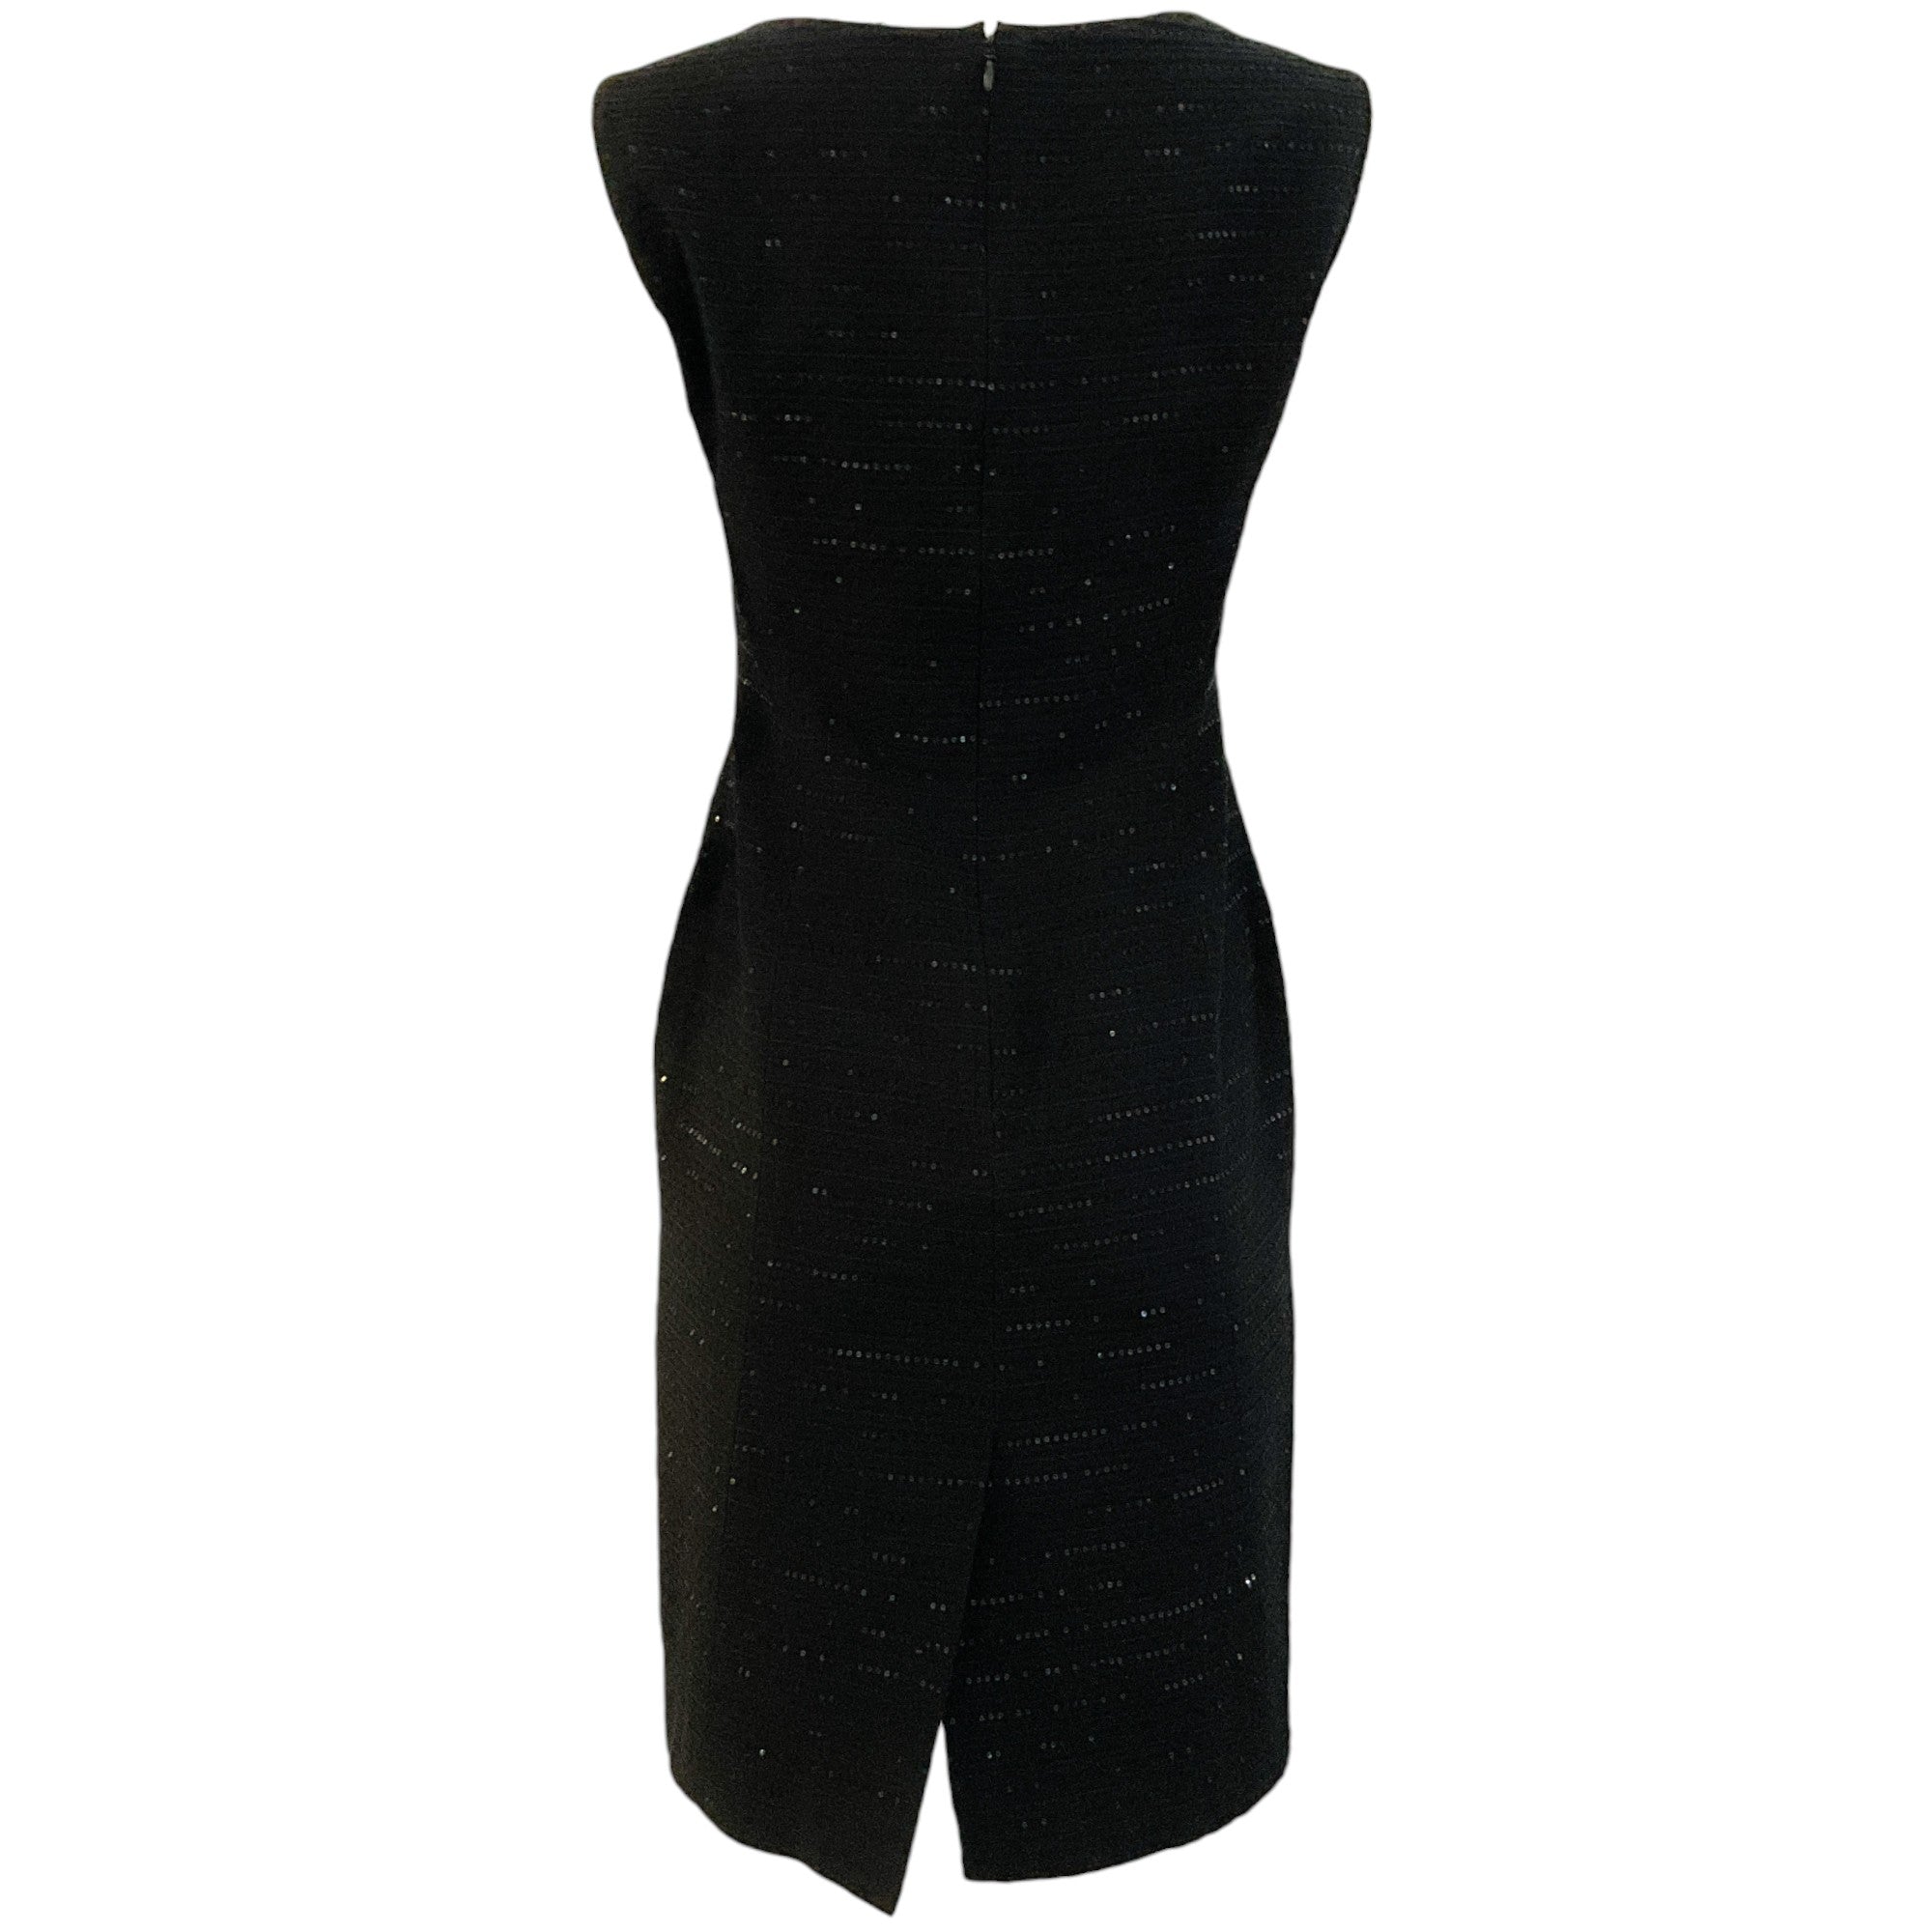 Carolina Herrera Black Sequin Embellished Sleeveless Dress